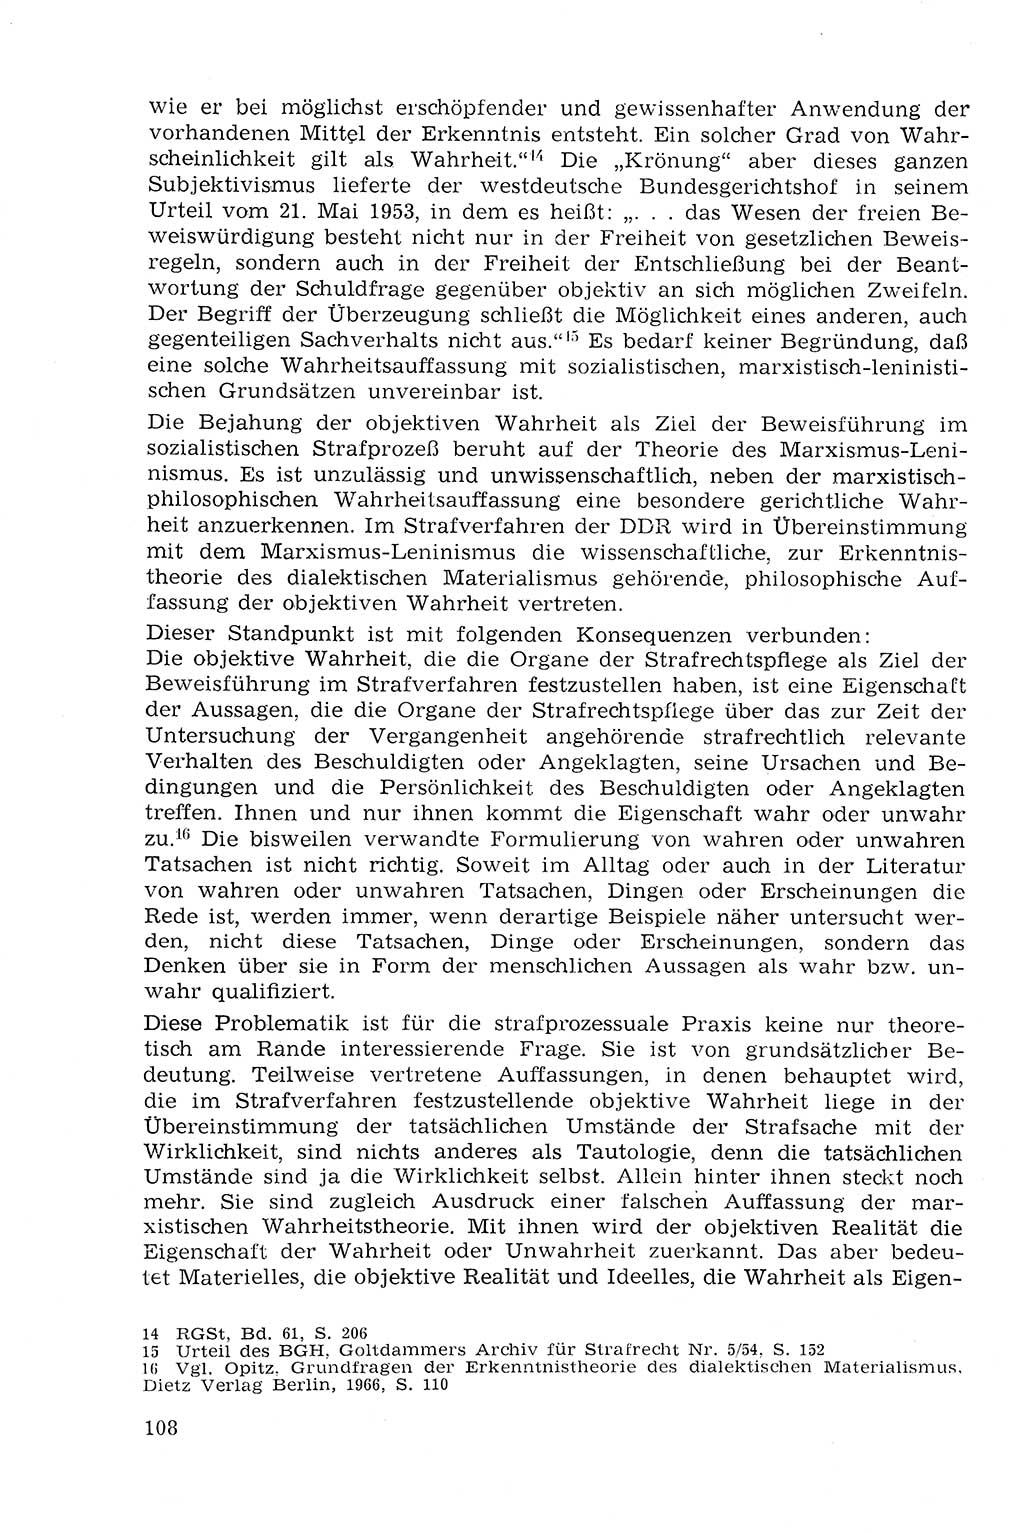 Strafprozeßrecht der DDR (Deutsche Demokratische Republik), Lehrmaterial 1969, Seite 108 (Strafprozeßr. DDR Lehrmat. 1969, S. 108)